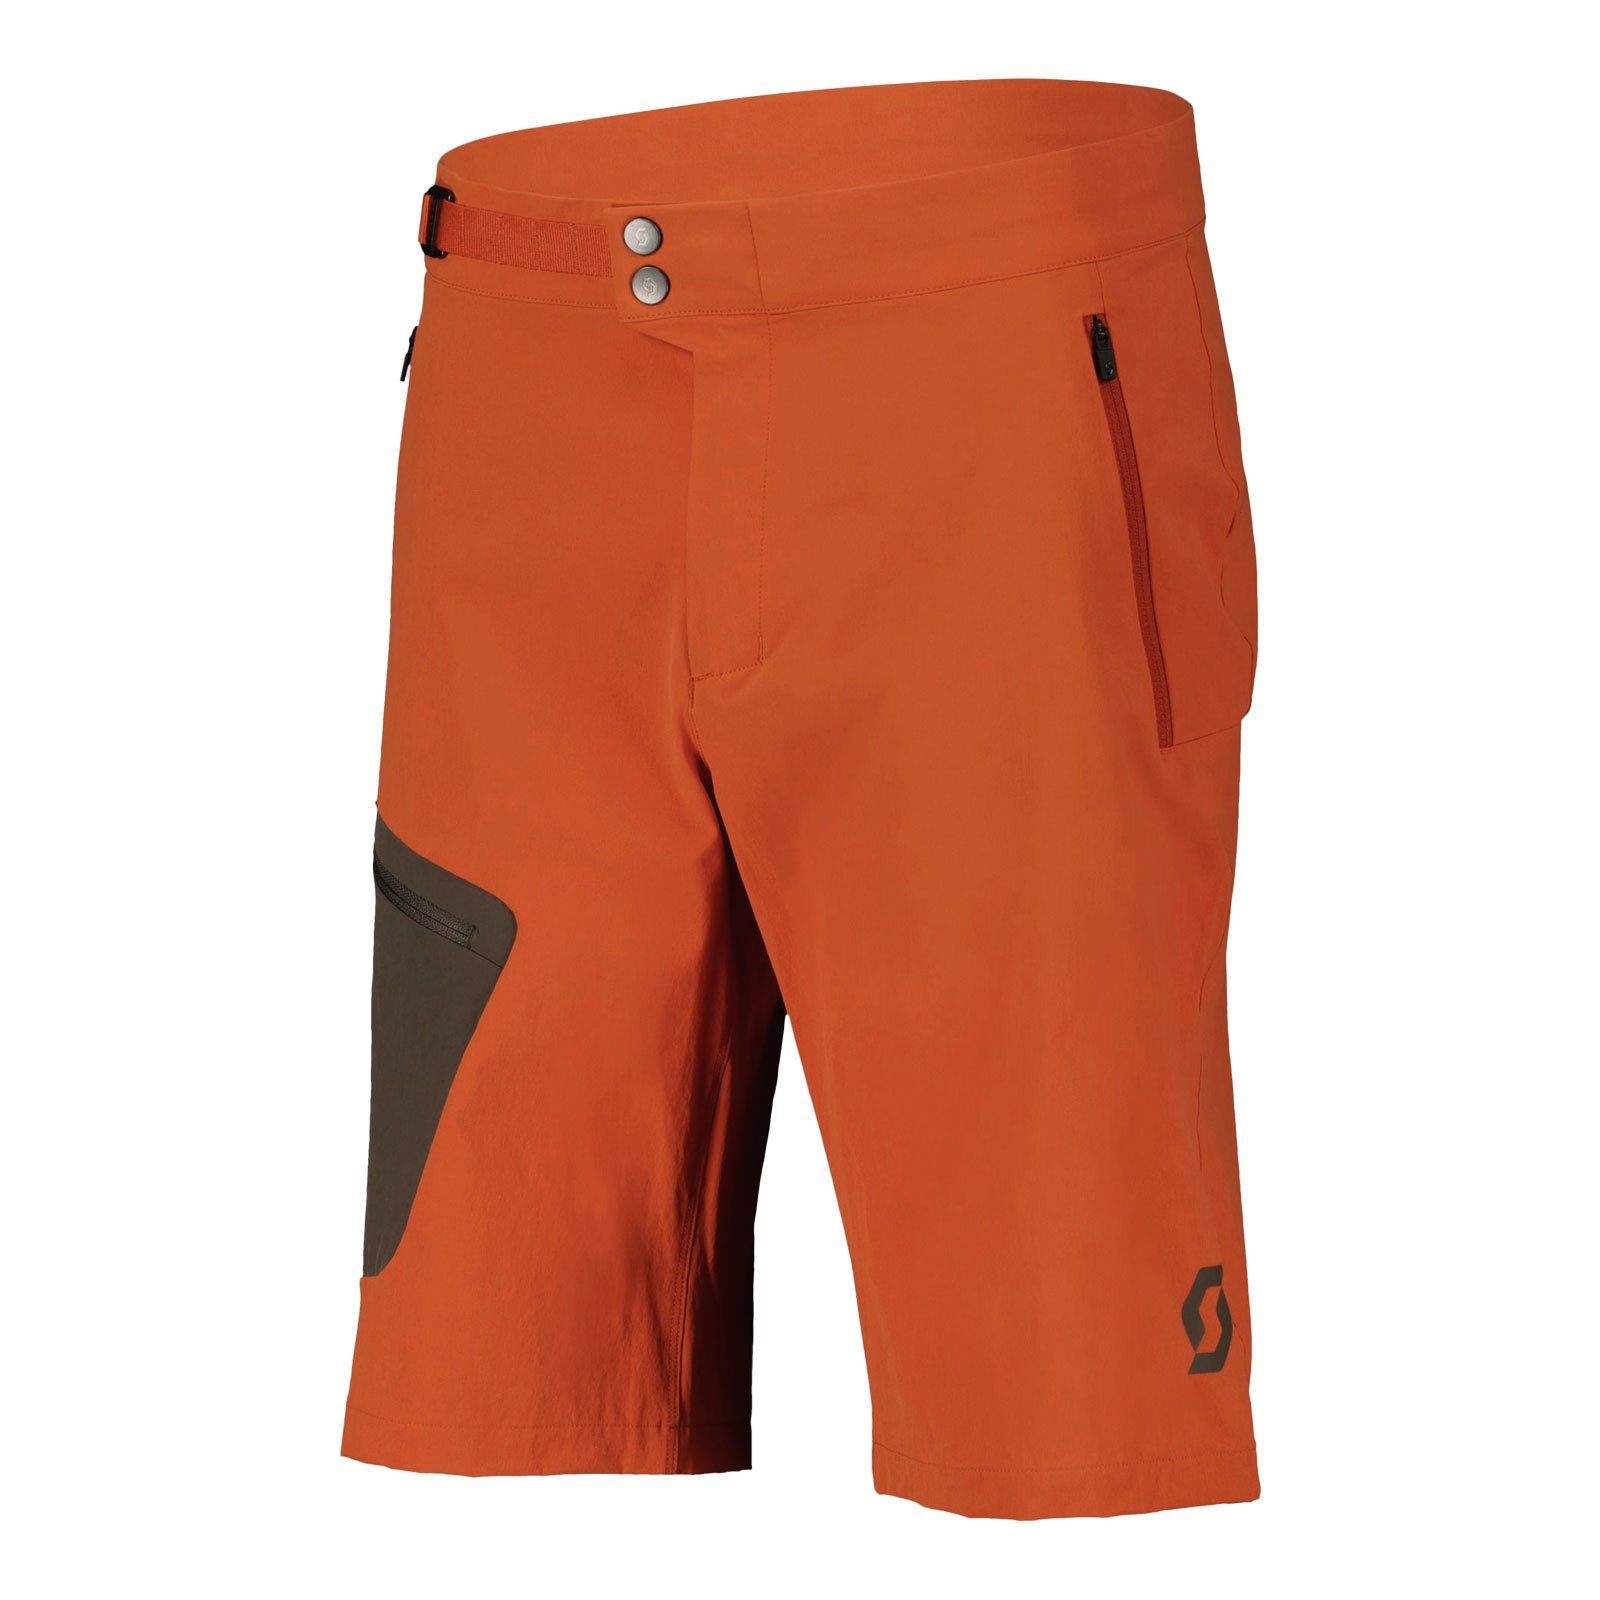 Scott 3/4-Hose verstellbarem braze mit orange / Explorair shadow 7537 Bund Light brown Shorts